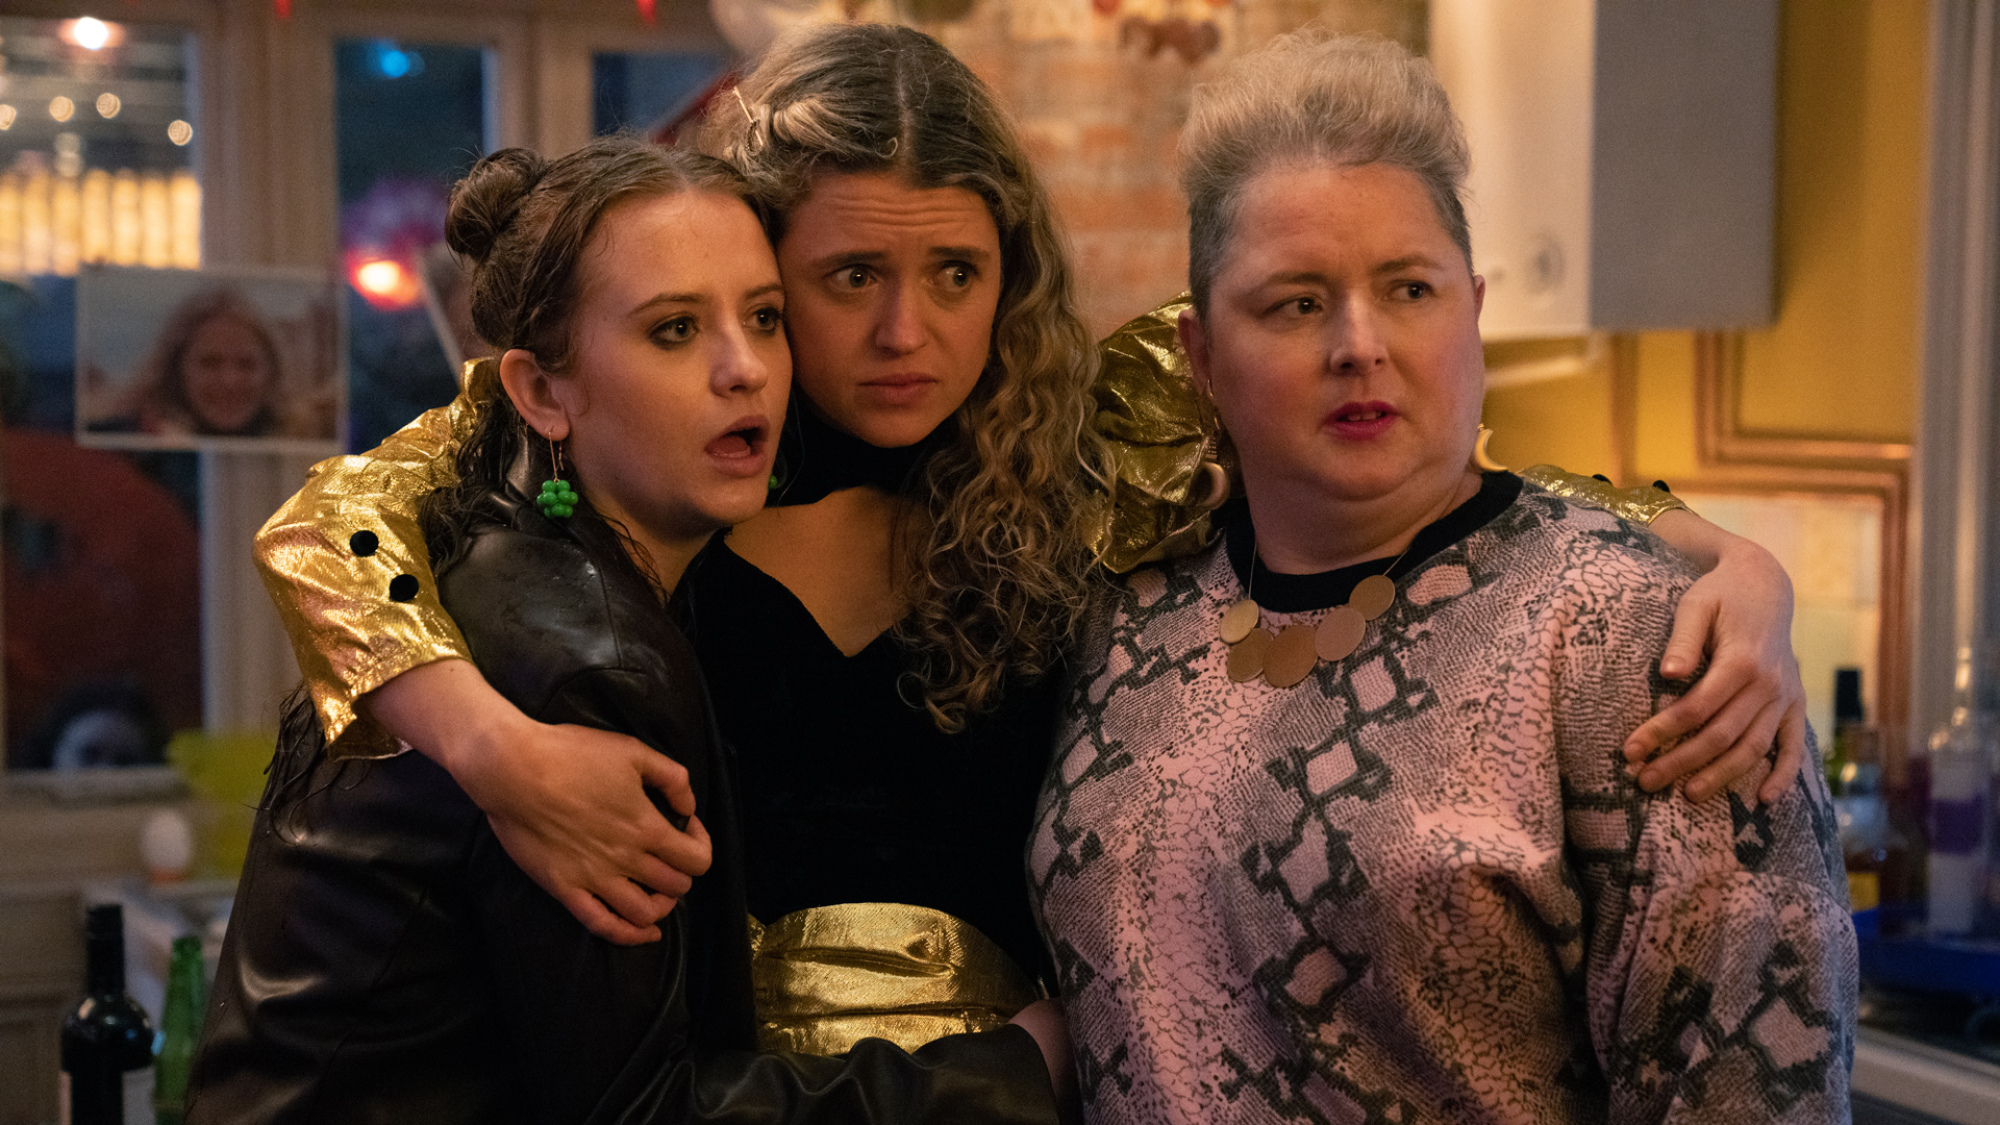 Trois femmes se tiennent dans un appartement au milieu d'une fête, l'air choquée.